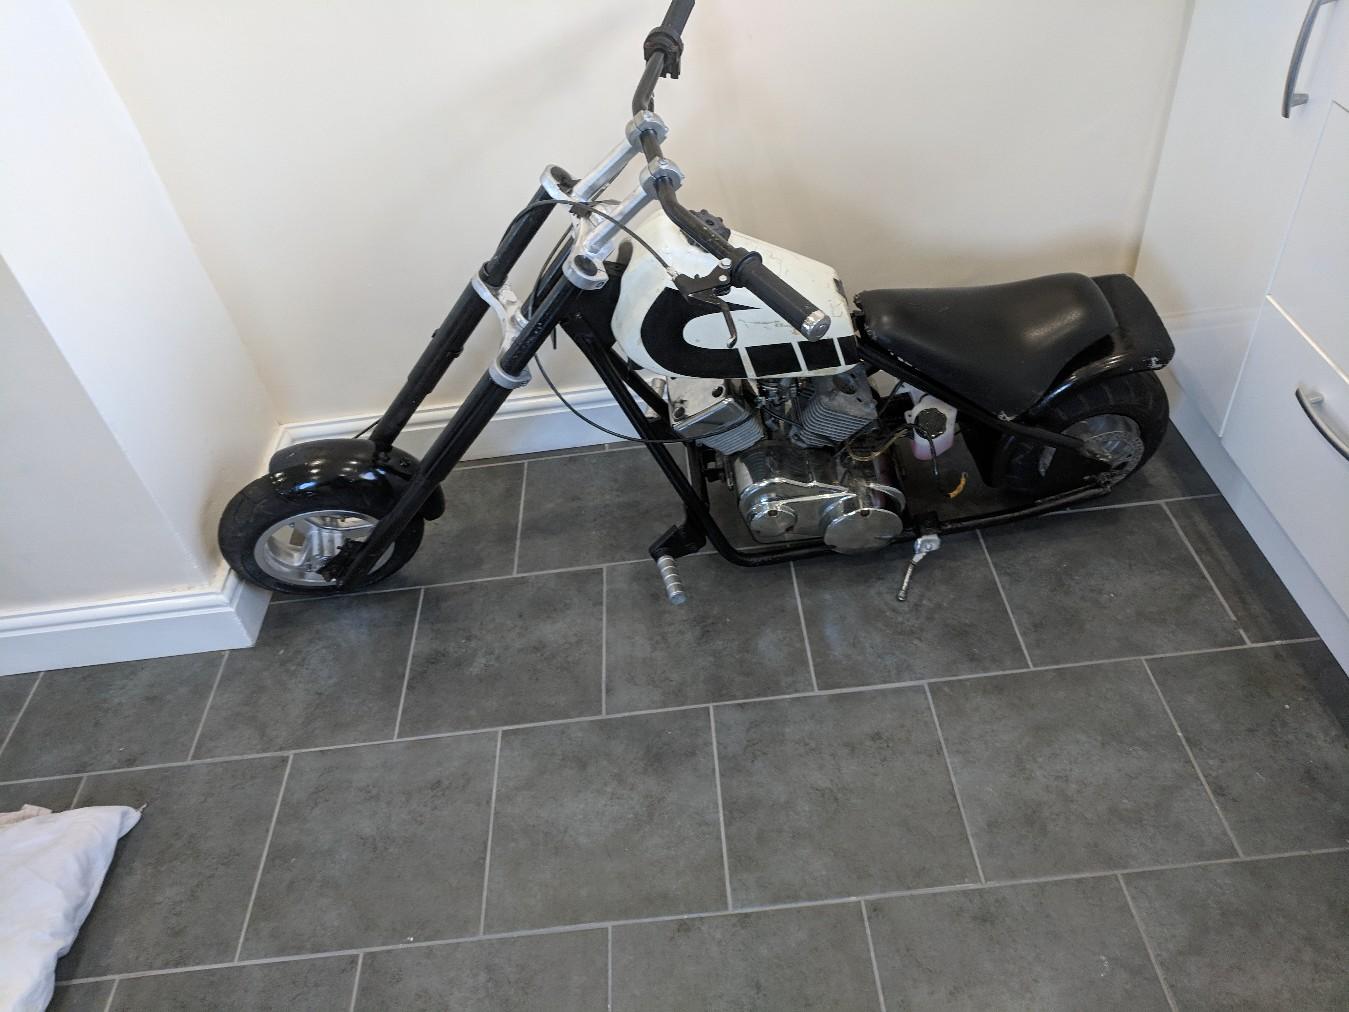 50cc Harley Davidson For Sale Promotion Off57